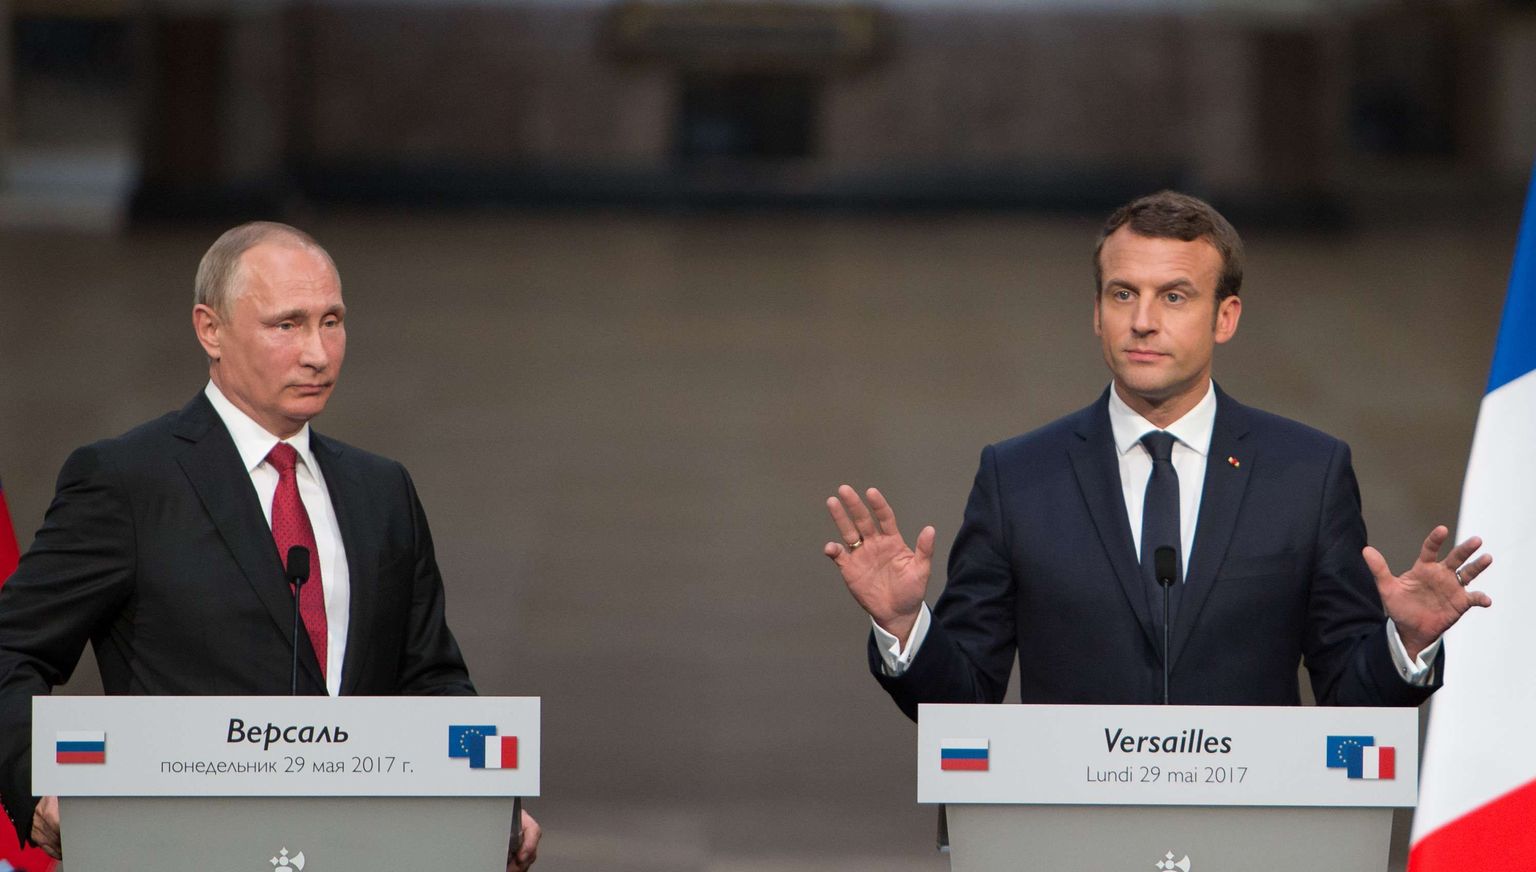 Prantsuse president Emmanuel Macron (paremal)nimetas RTd ja Sputnikku propagandakanaleiks ka oma esimesel pressikonverentsil Vene kolleegi Vladimir Putiniga.